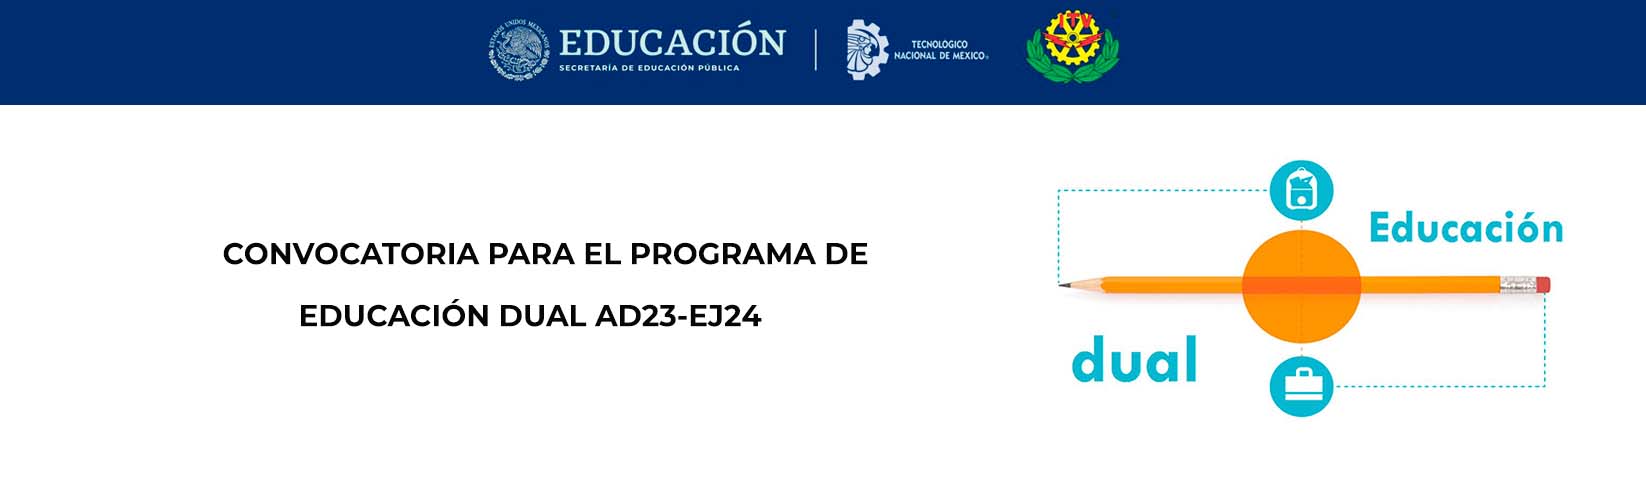 CONVOCATORIA PARA EL PROGRAMA DE EDUCACIÓN DUAL AD23-EJ24